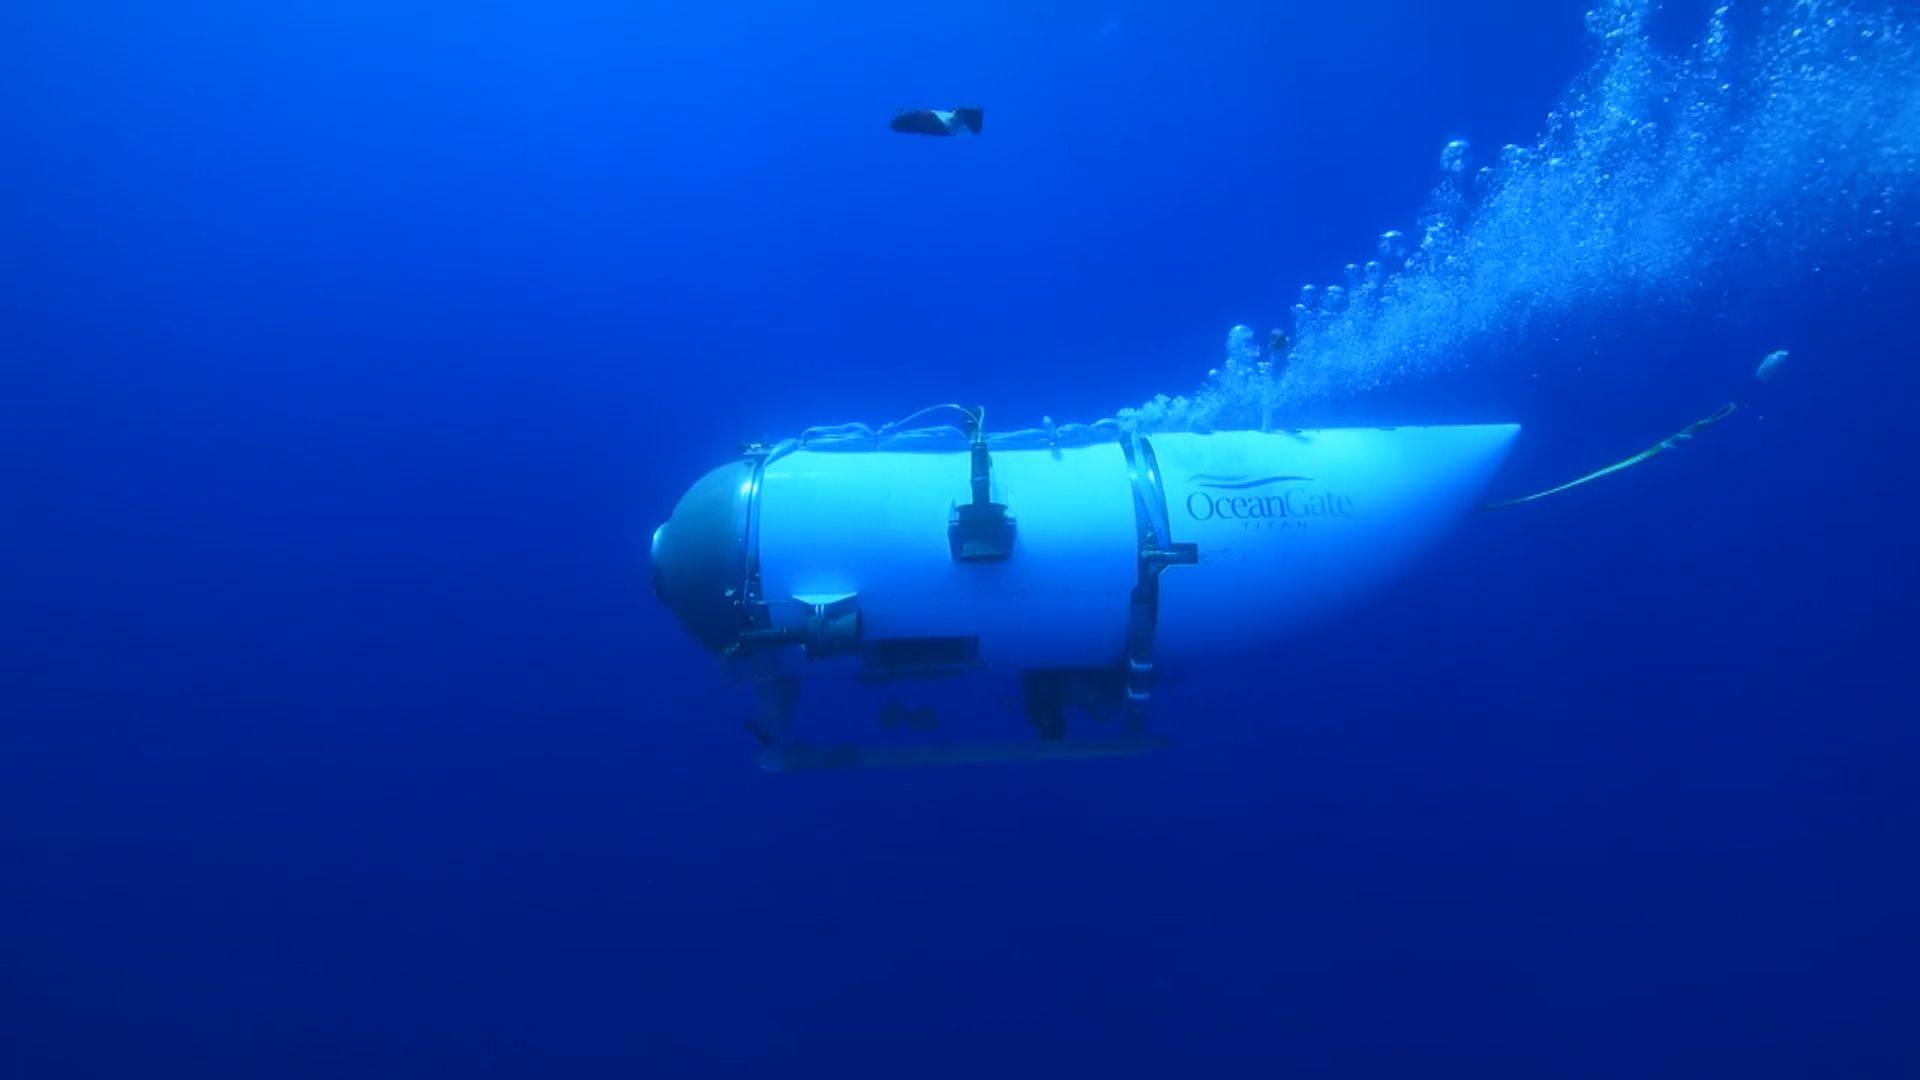 參觀鐵達尼號殘骸潛水器失蹤 美加展開搜救行動